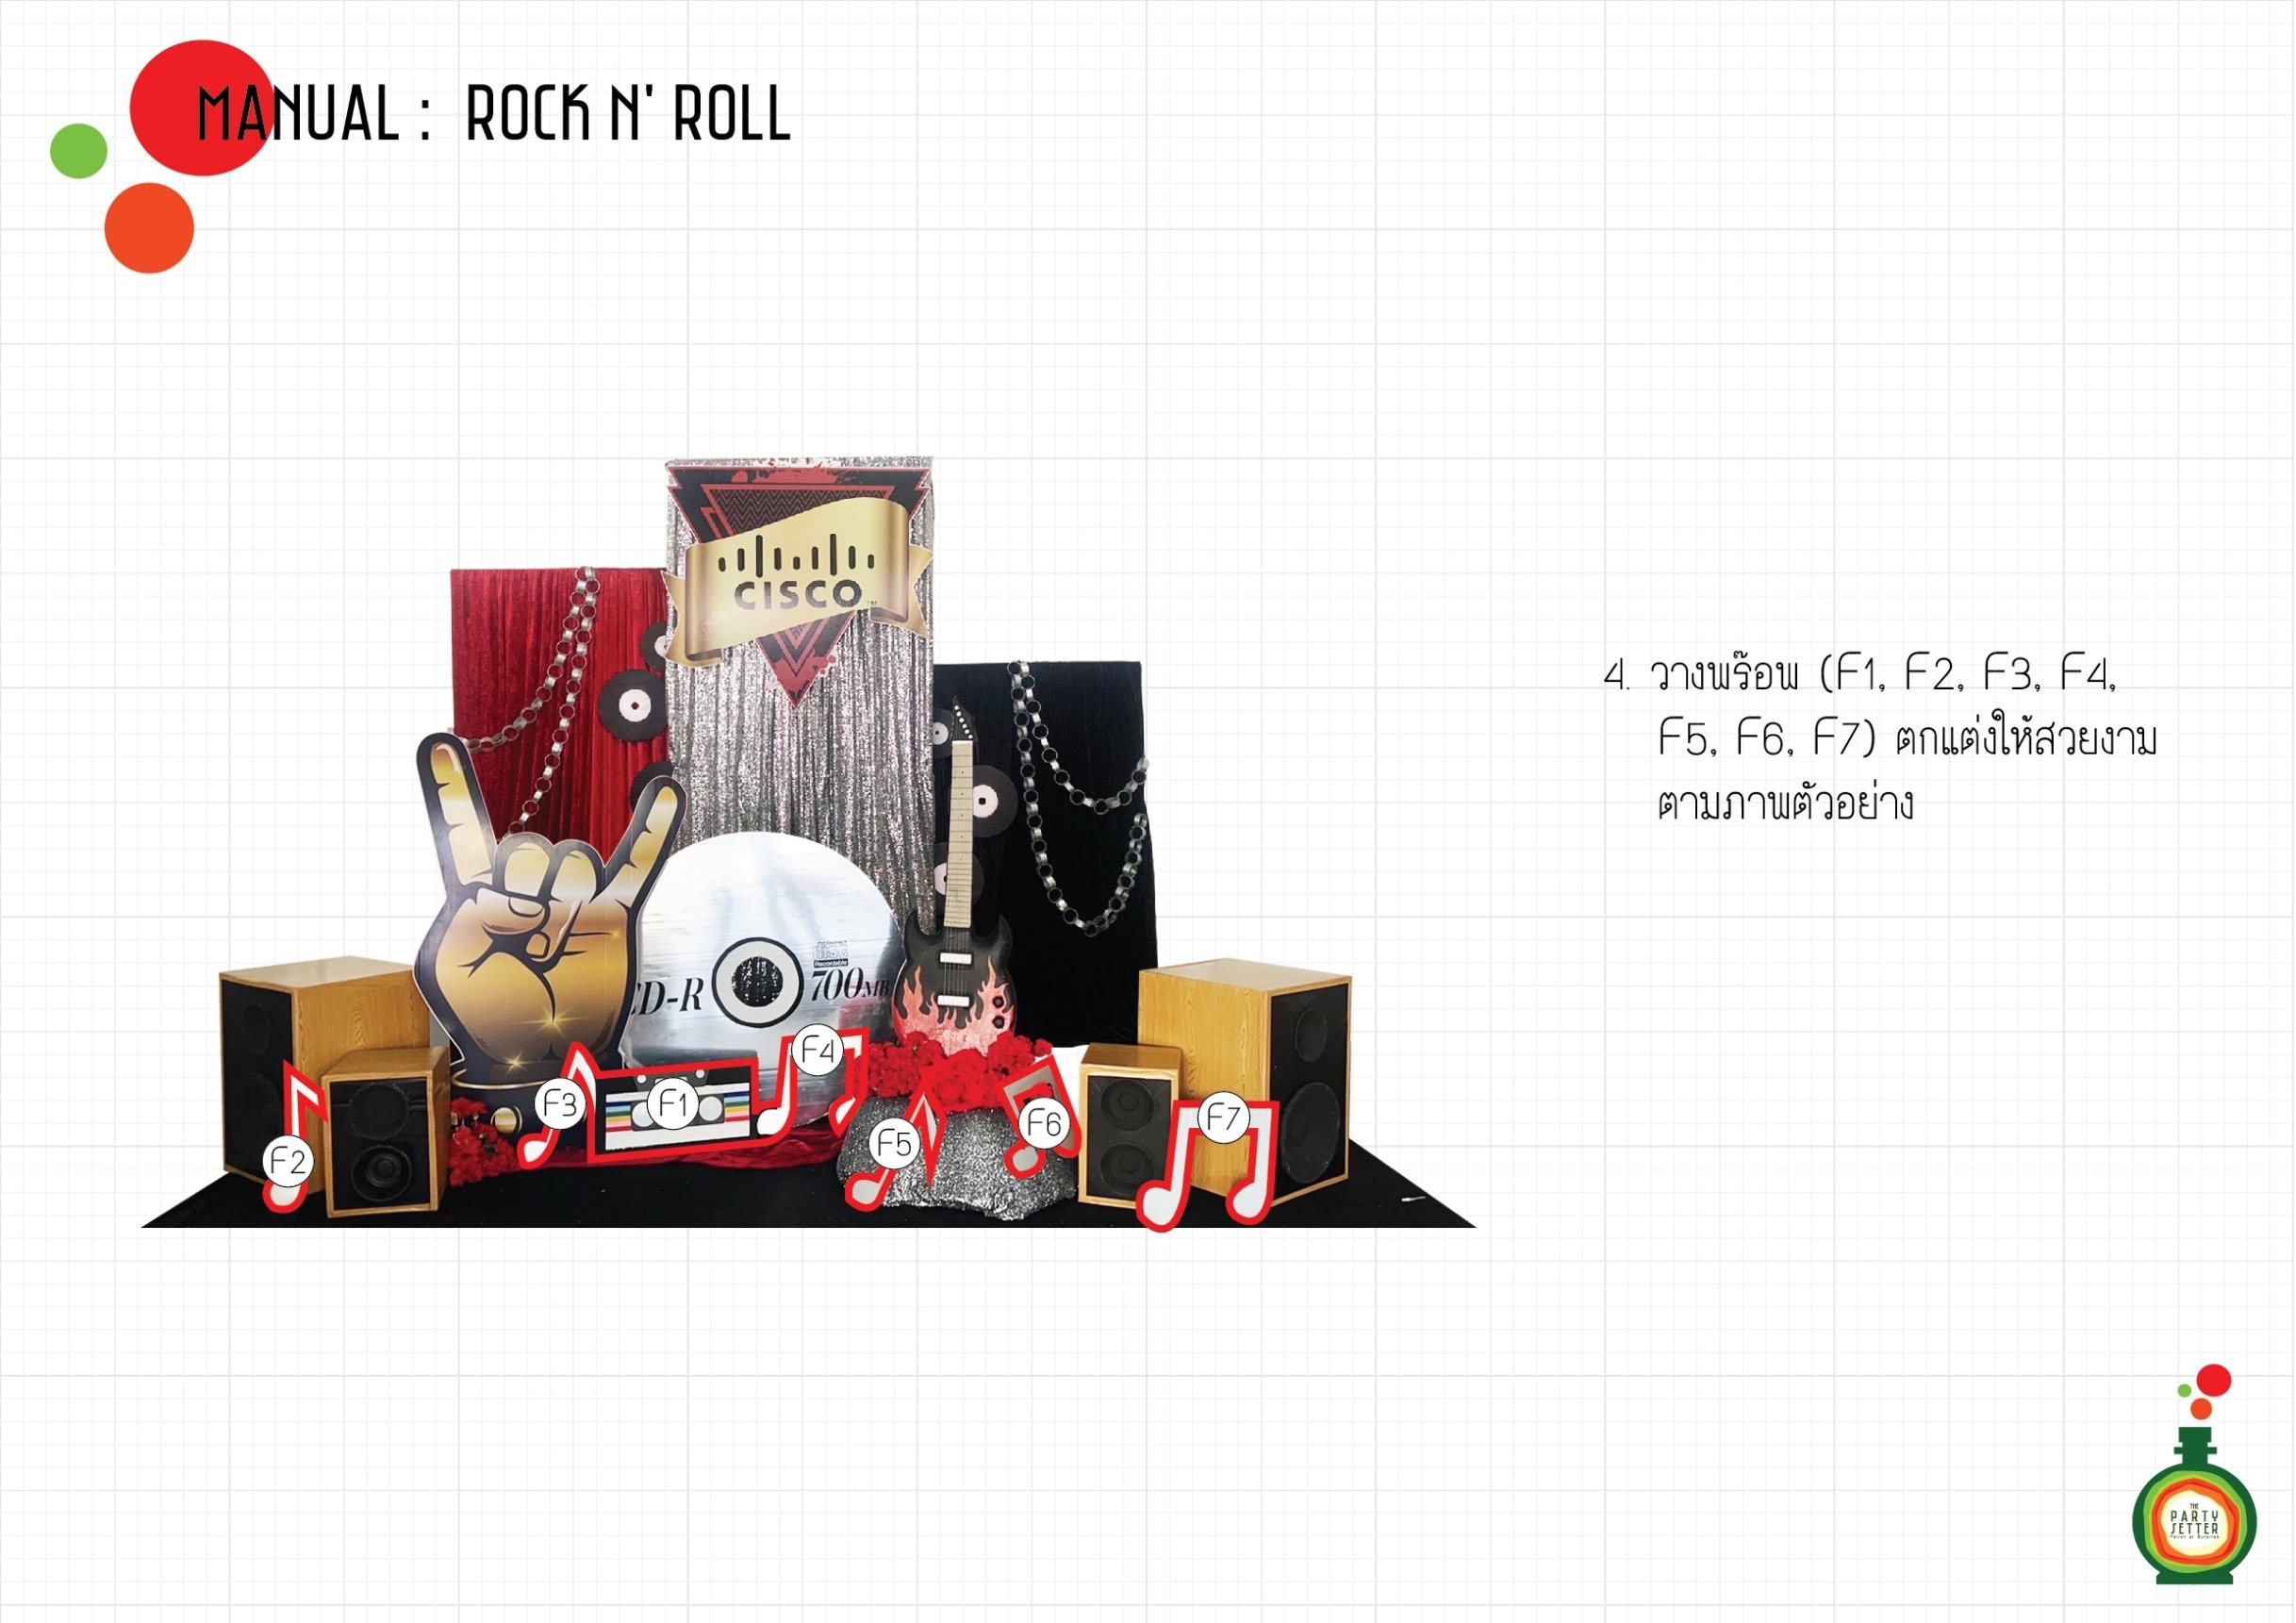 Manual_Rock n' Roll_04-01.jpg